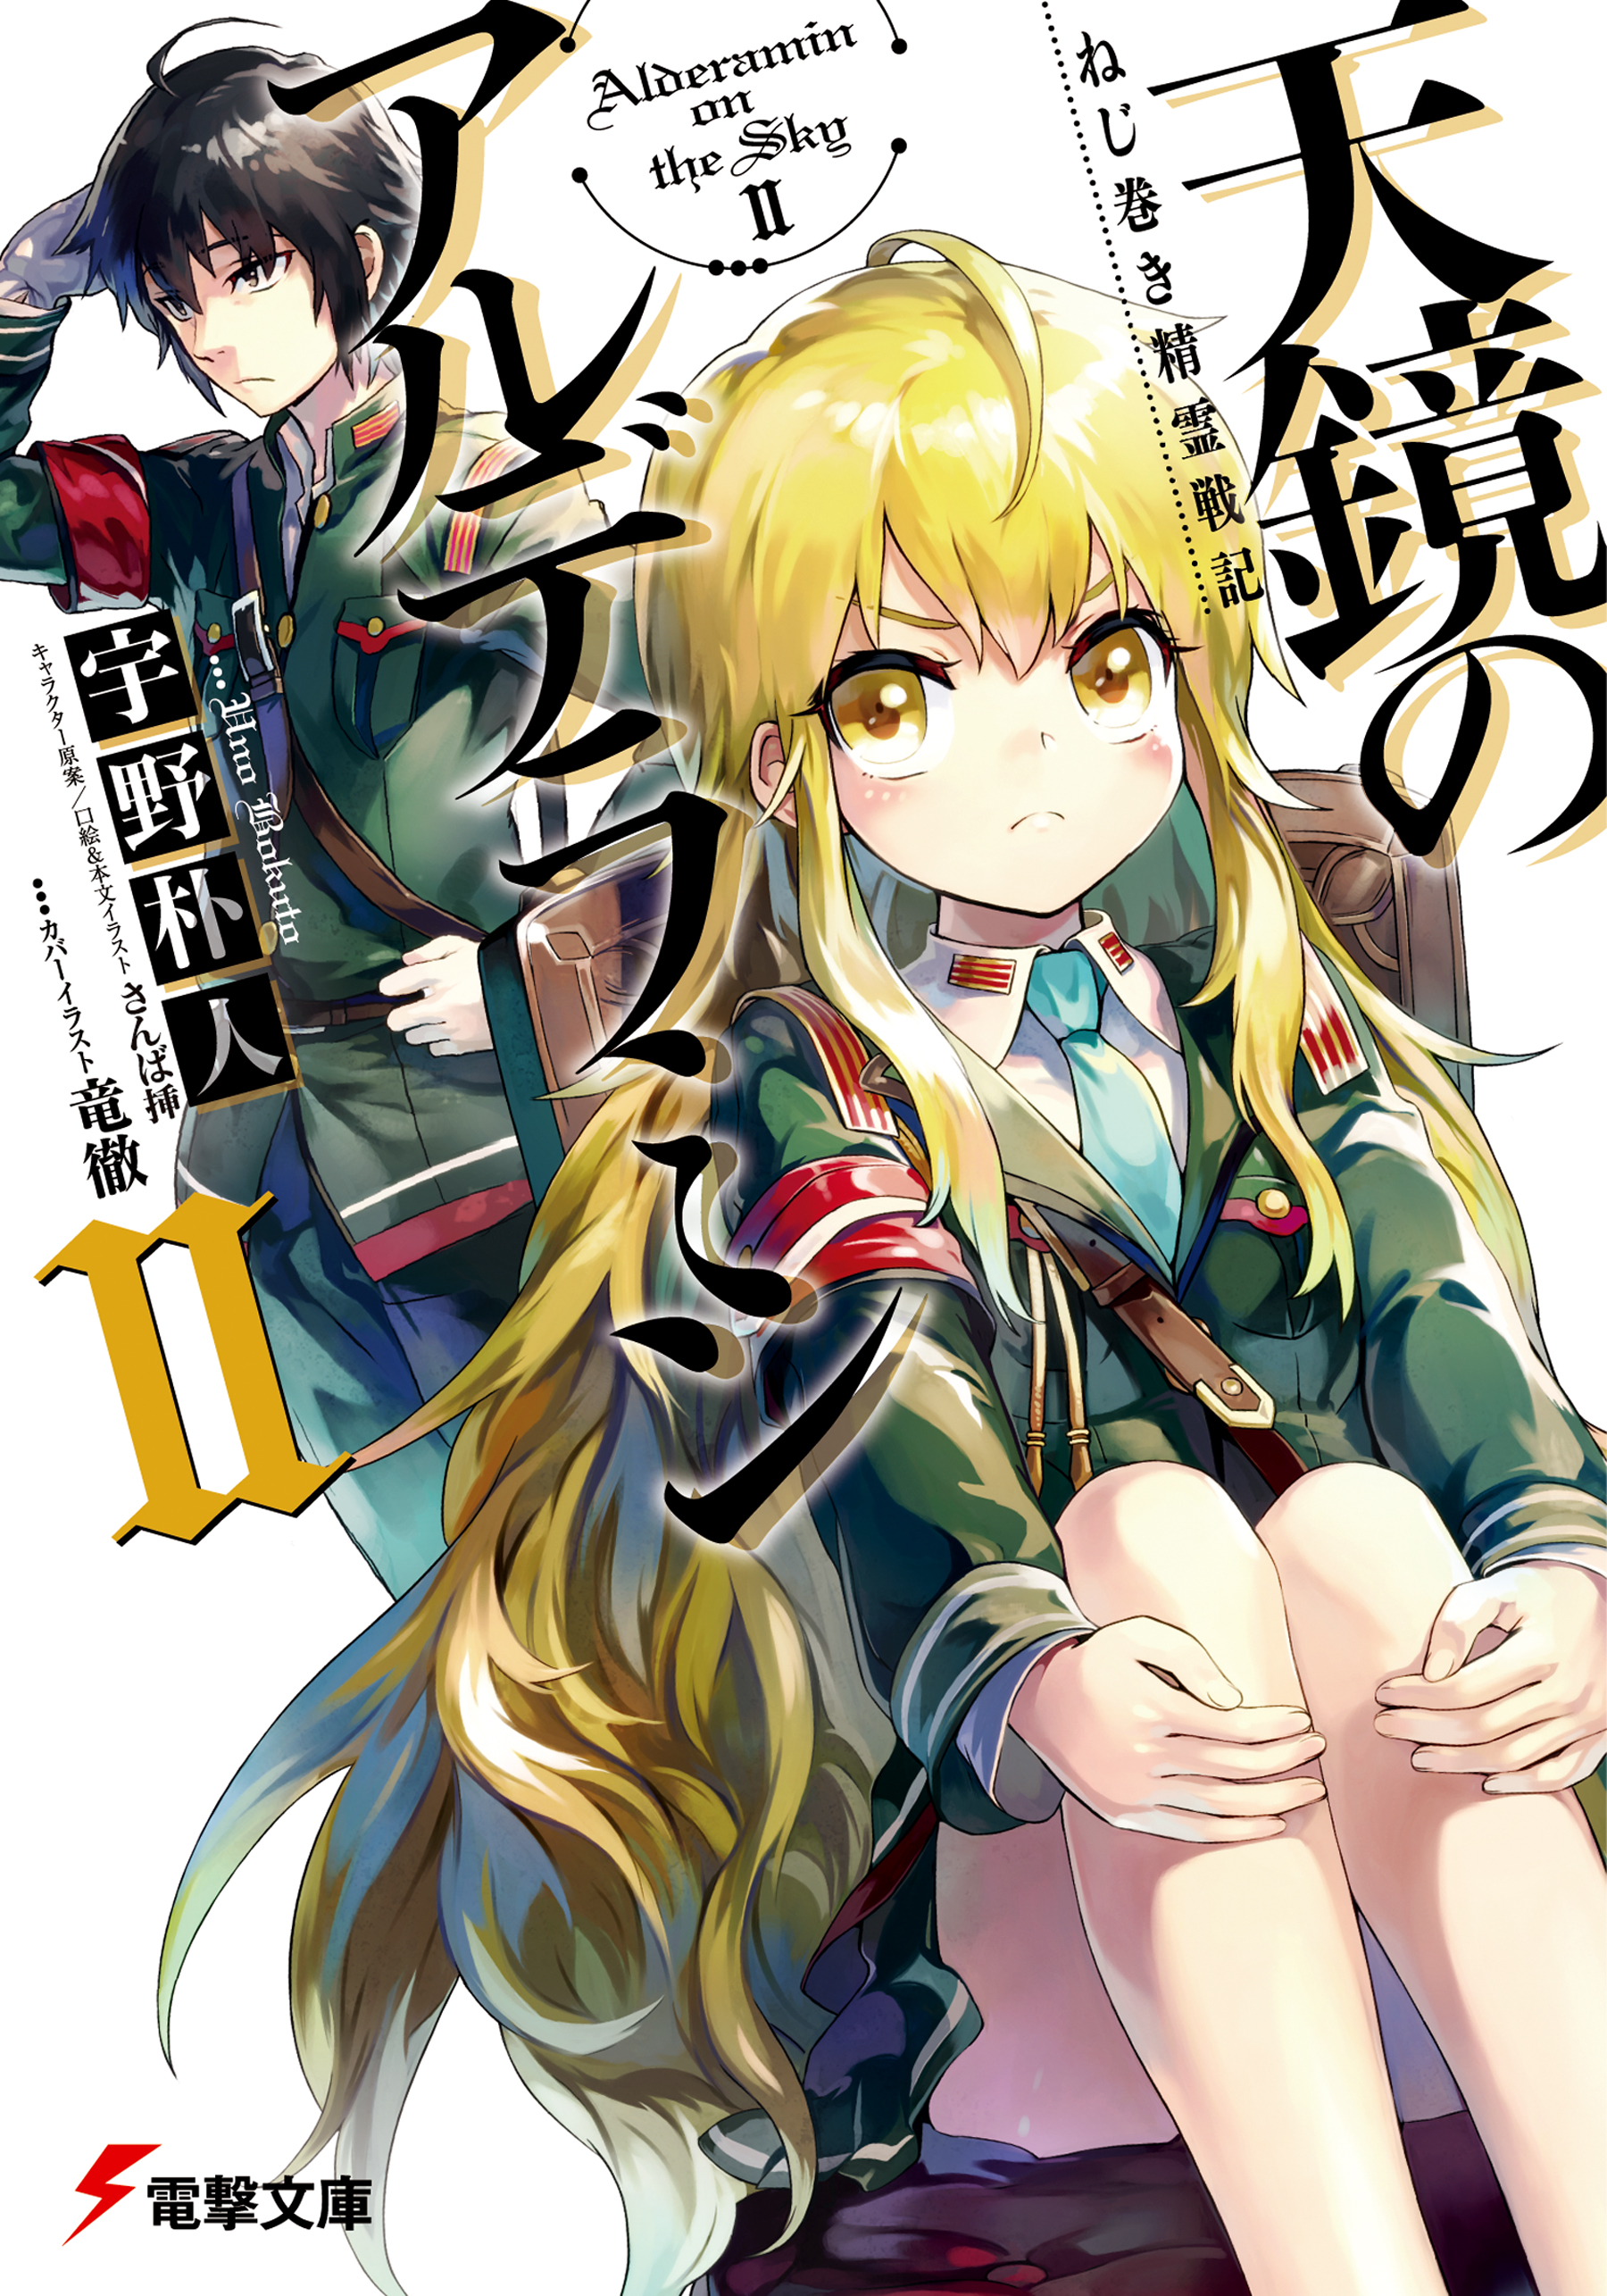 Light Novel Volume 2, OsaMake Wiki